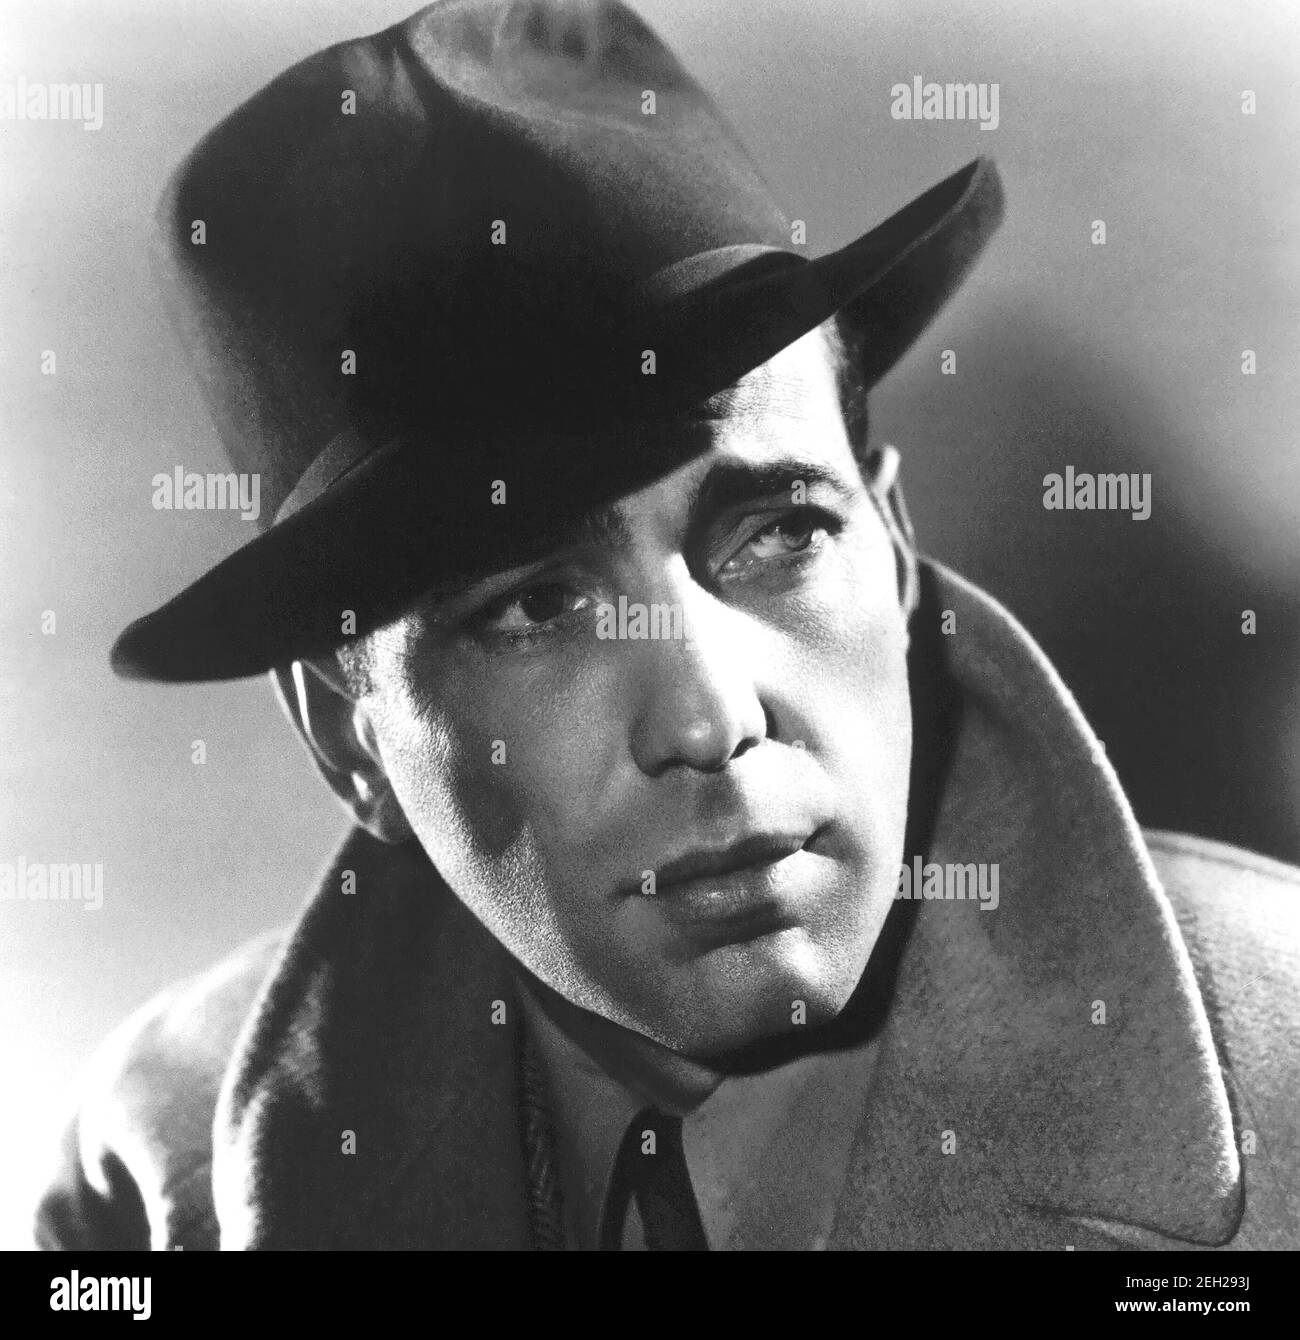 Humphrey Bogart, 1940, ritratto in b/n, foto pubblicitaria. La pubblicazione sul retro dice che questa è stata una nuova foto di lui dal prossimo film Brother Orchid. Foto Stock